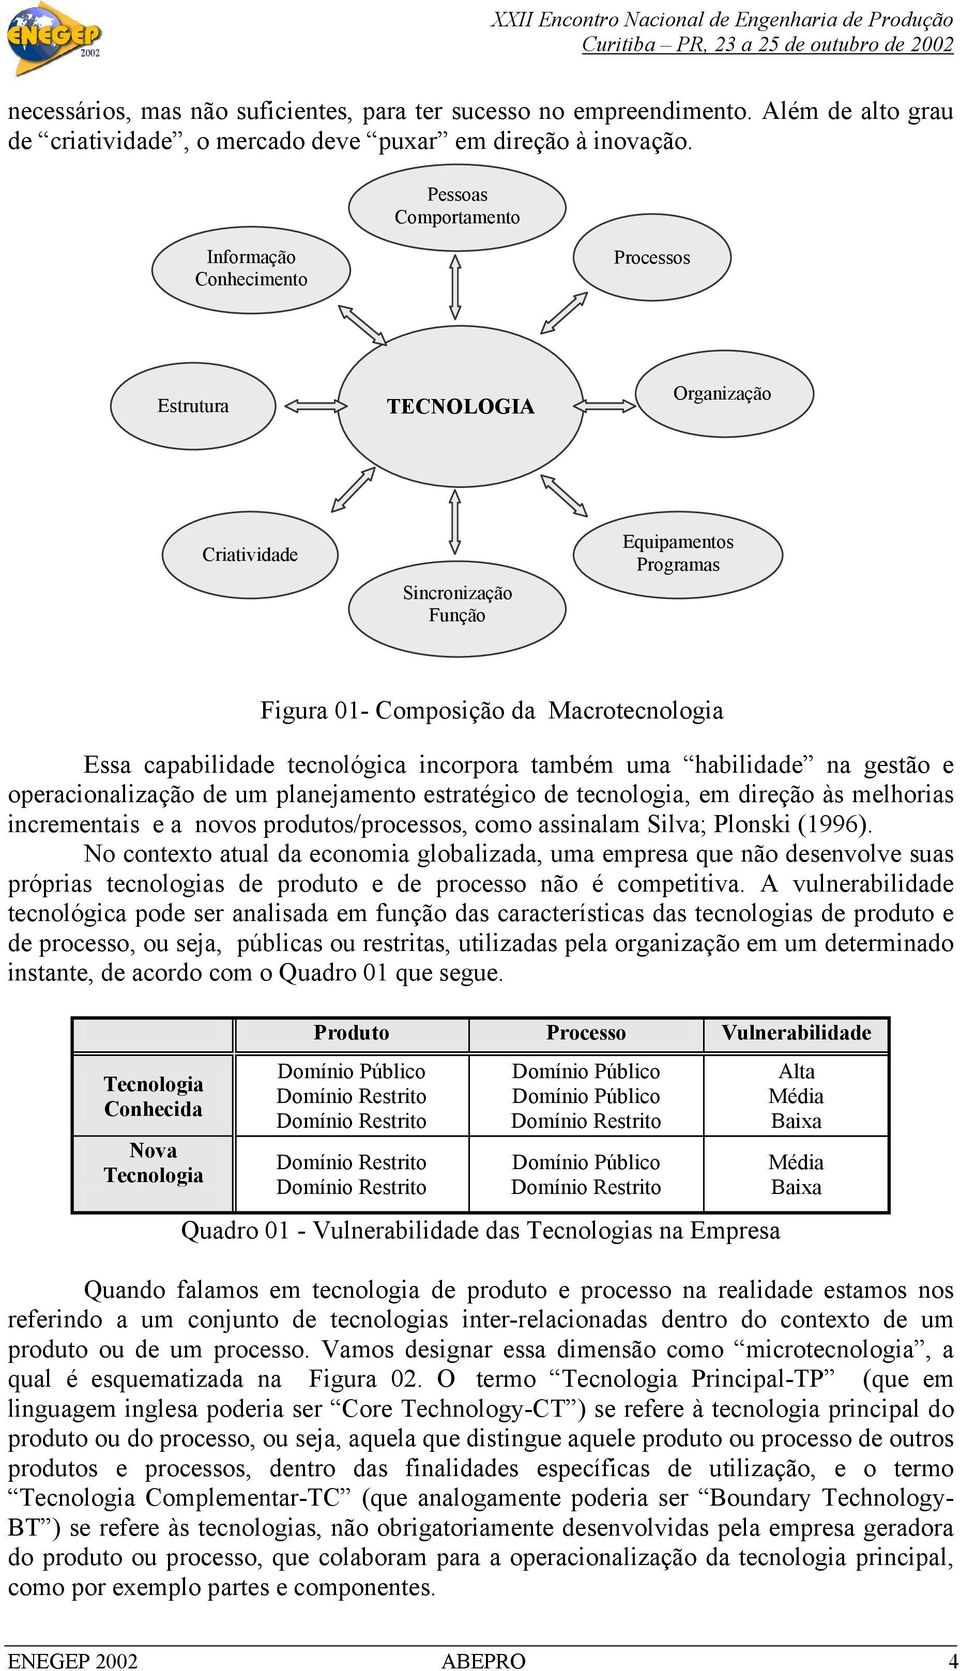 habilidade na gestão e operacionalização de um planejamento estratégico de tecnologia, em direção às melhorias incrementais e a novos produtos/processos, como assinalam Silva; Plonski (1996).